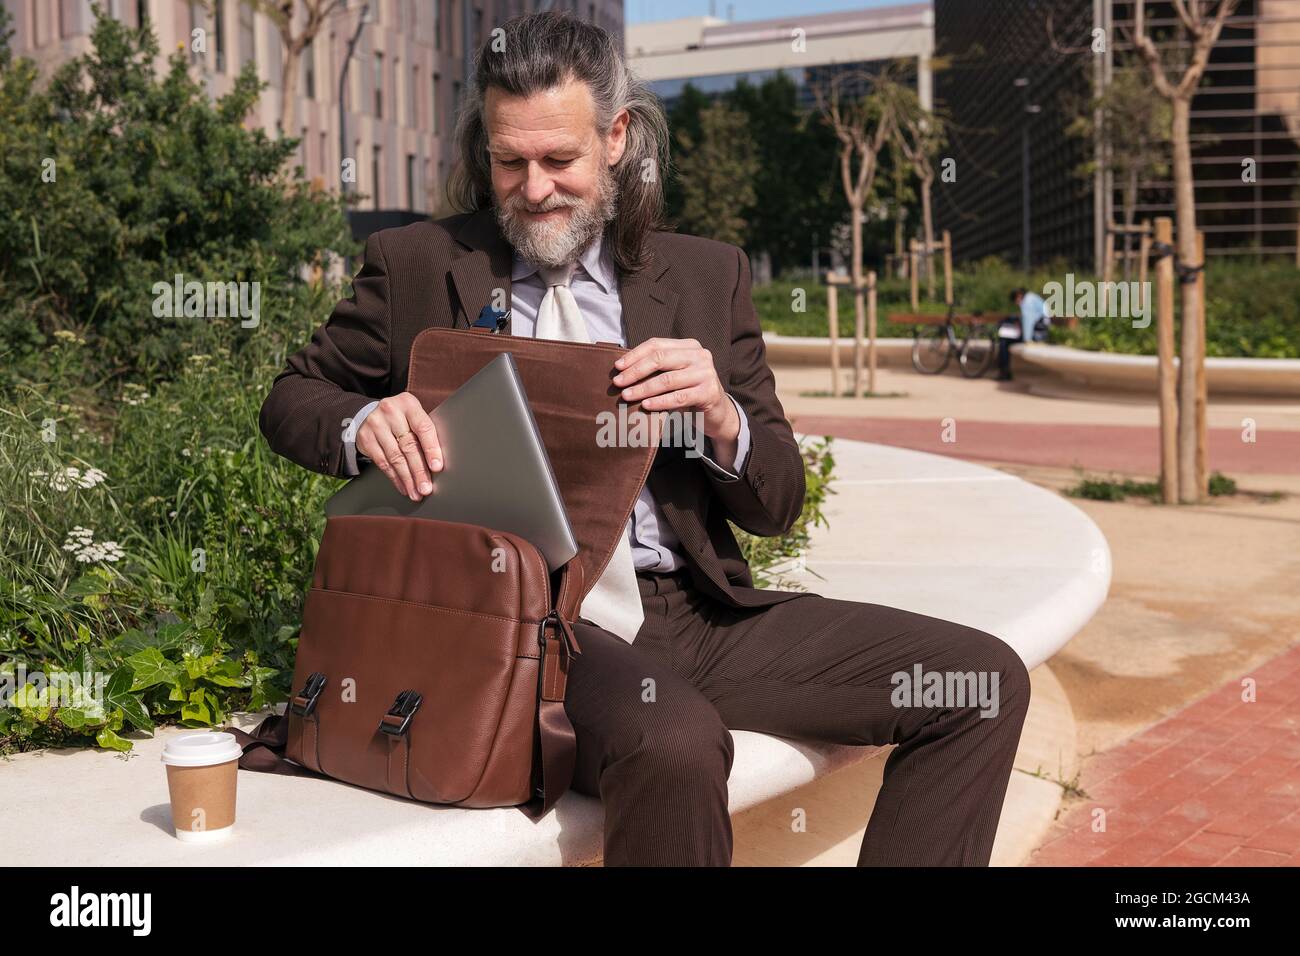 Contenido respetable de mediana edad barba hombre abogado en la ropa formal  que toma el portátil del maletín mientras se sienta con una taza de café  para llevar en urbano Fotografía de